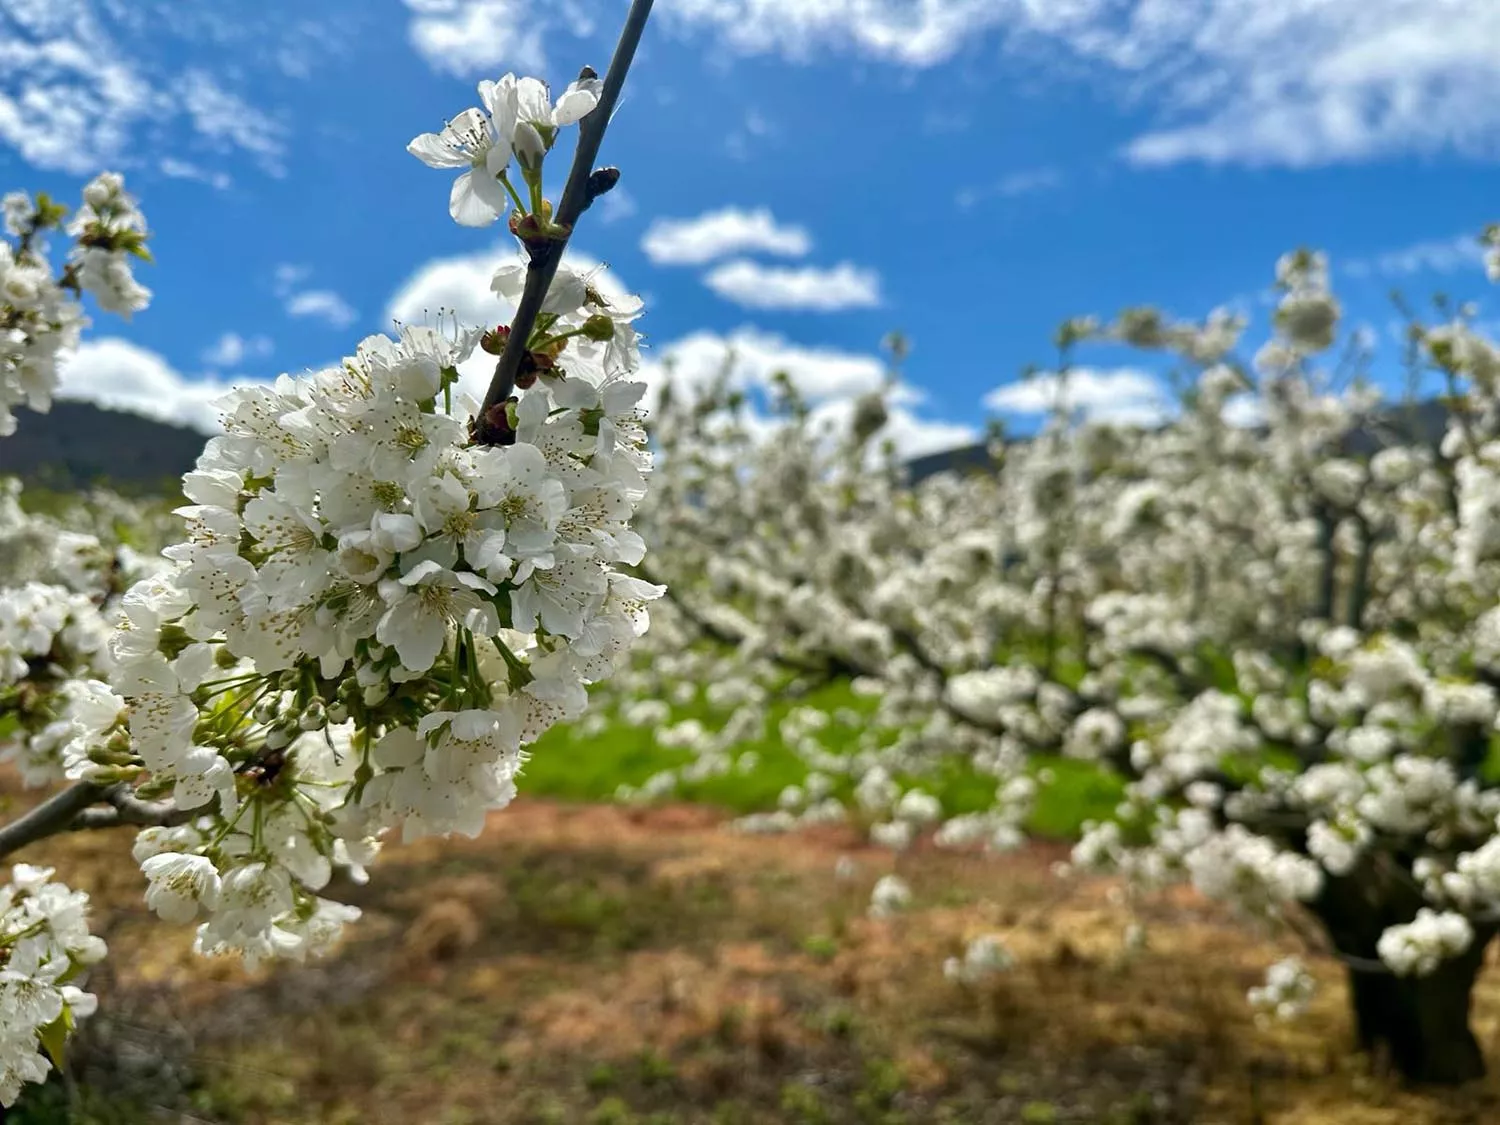 La concejalía de Turismo anima a visitar la Casita del Ratoncito Pérez durante la floración de los cerezos en Rimor